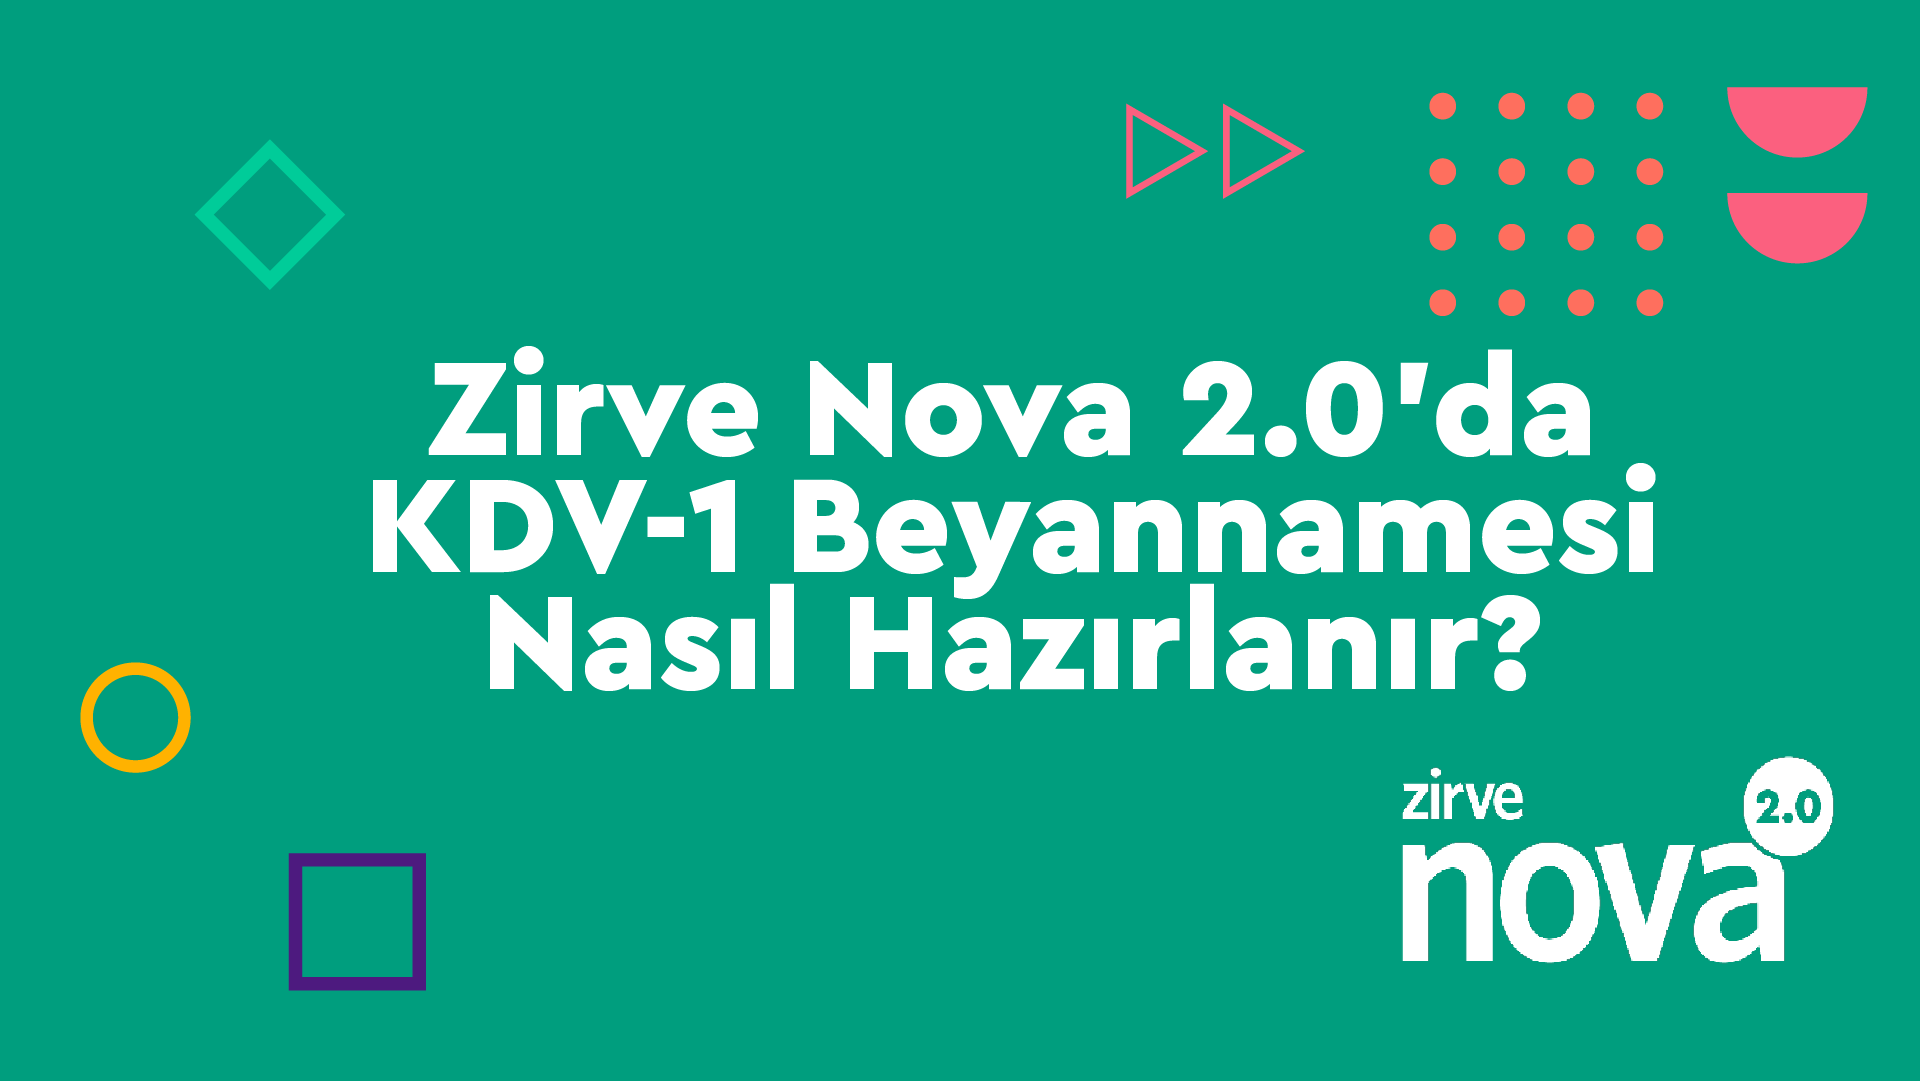 Zirve-Nova-KDV-1 Nasıl Yapılır? Zirve Nova  Zirve Nova 2.0 zirve nova KDV-1 kdv hazırlanır beyanname 